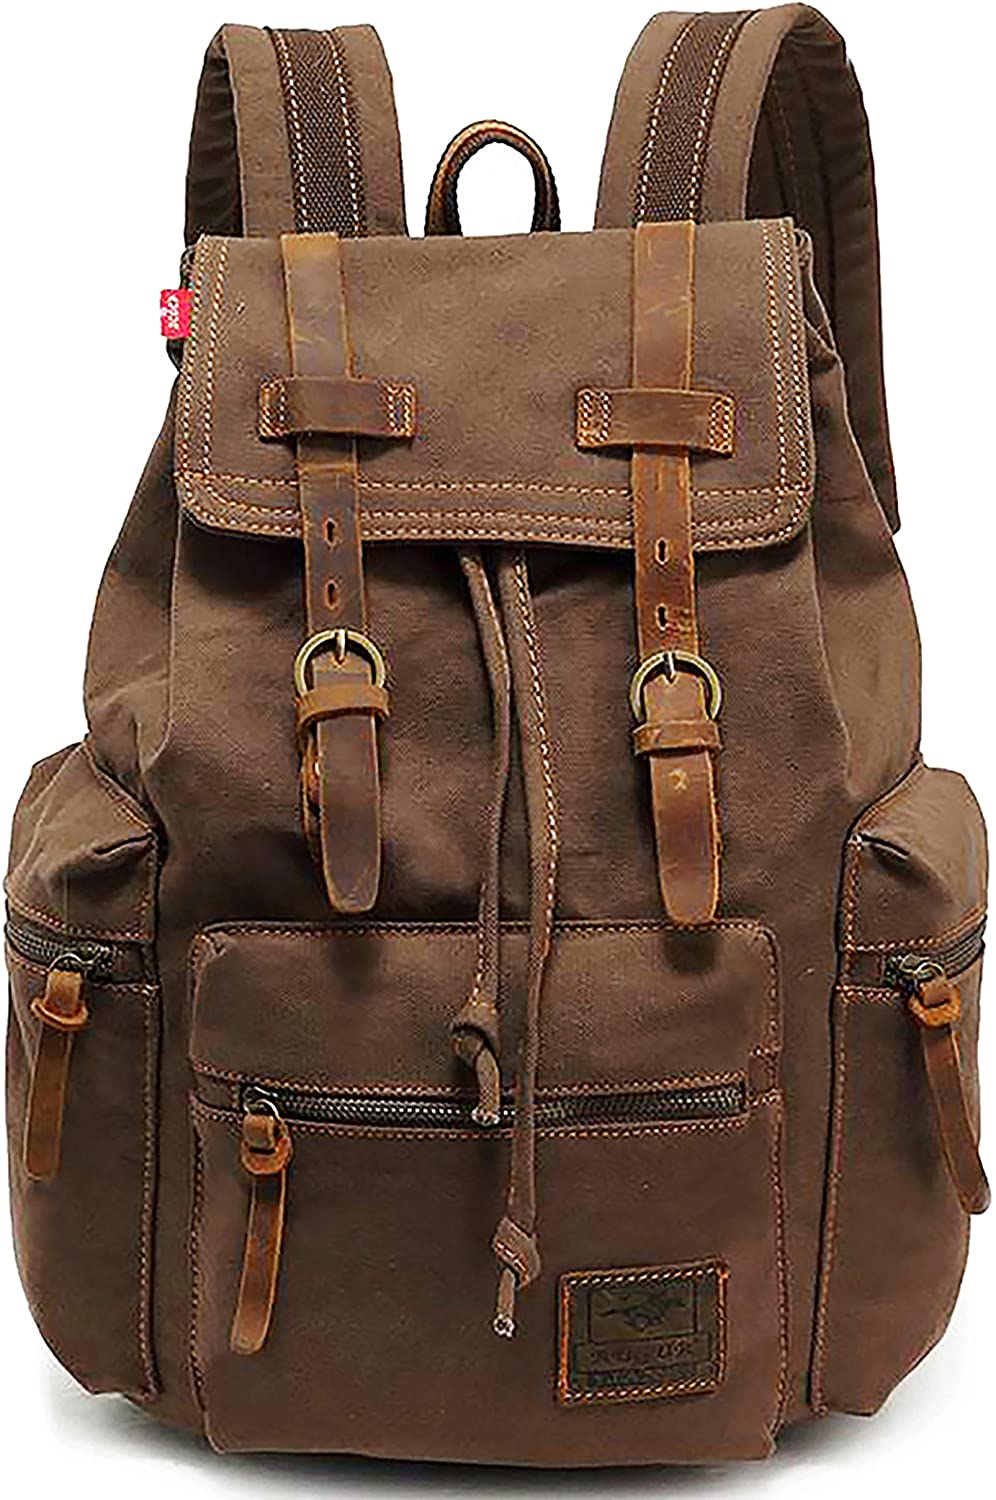 High Capacity Vintage Travel Canvas Leather Backpack School Bag for Men,Computers Laptop Backpacks Rucksack,Shoulder Camping Hiking Backpacks Bookbag 14" Laptop for Men Women - image 1 of 9